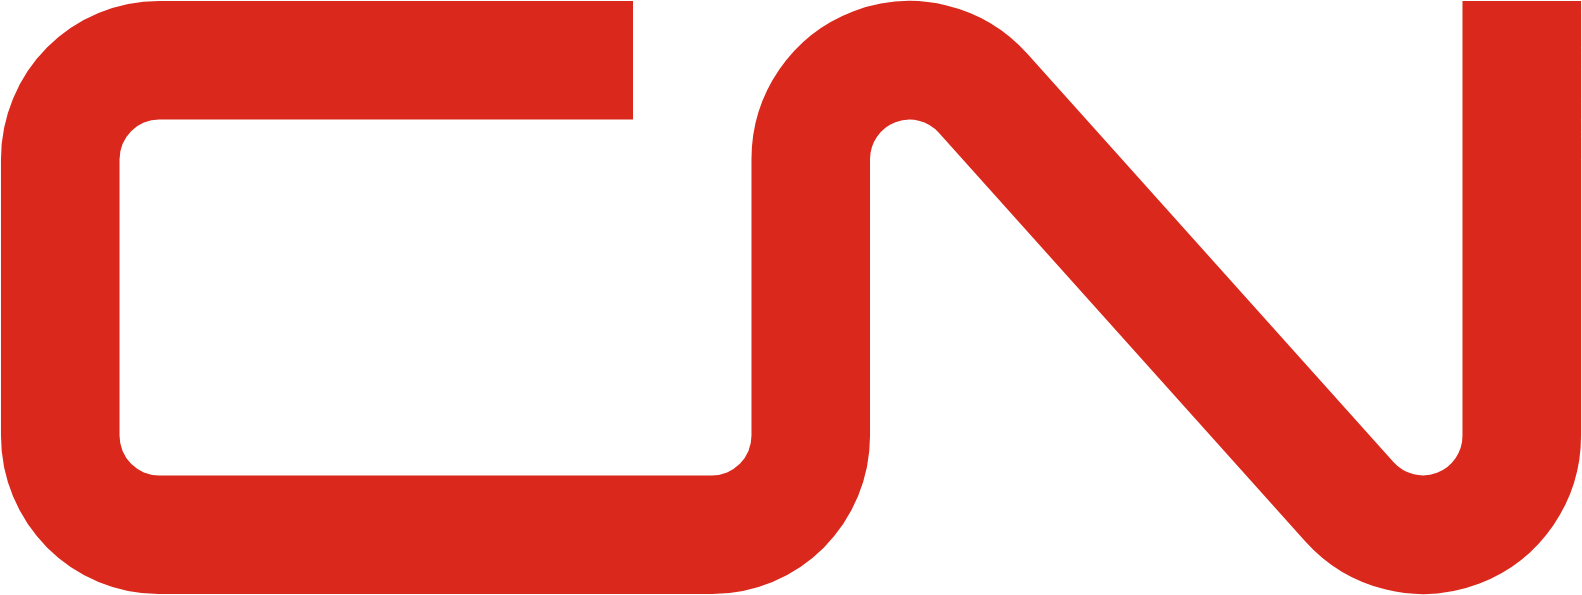 Canadian National Railway logo (PNG transparent)